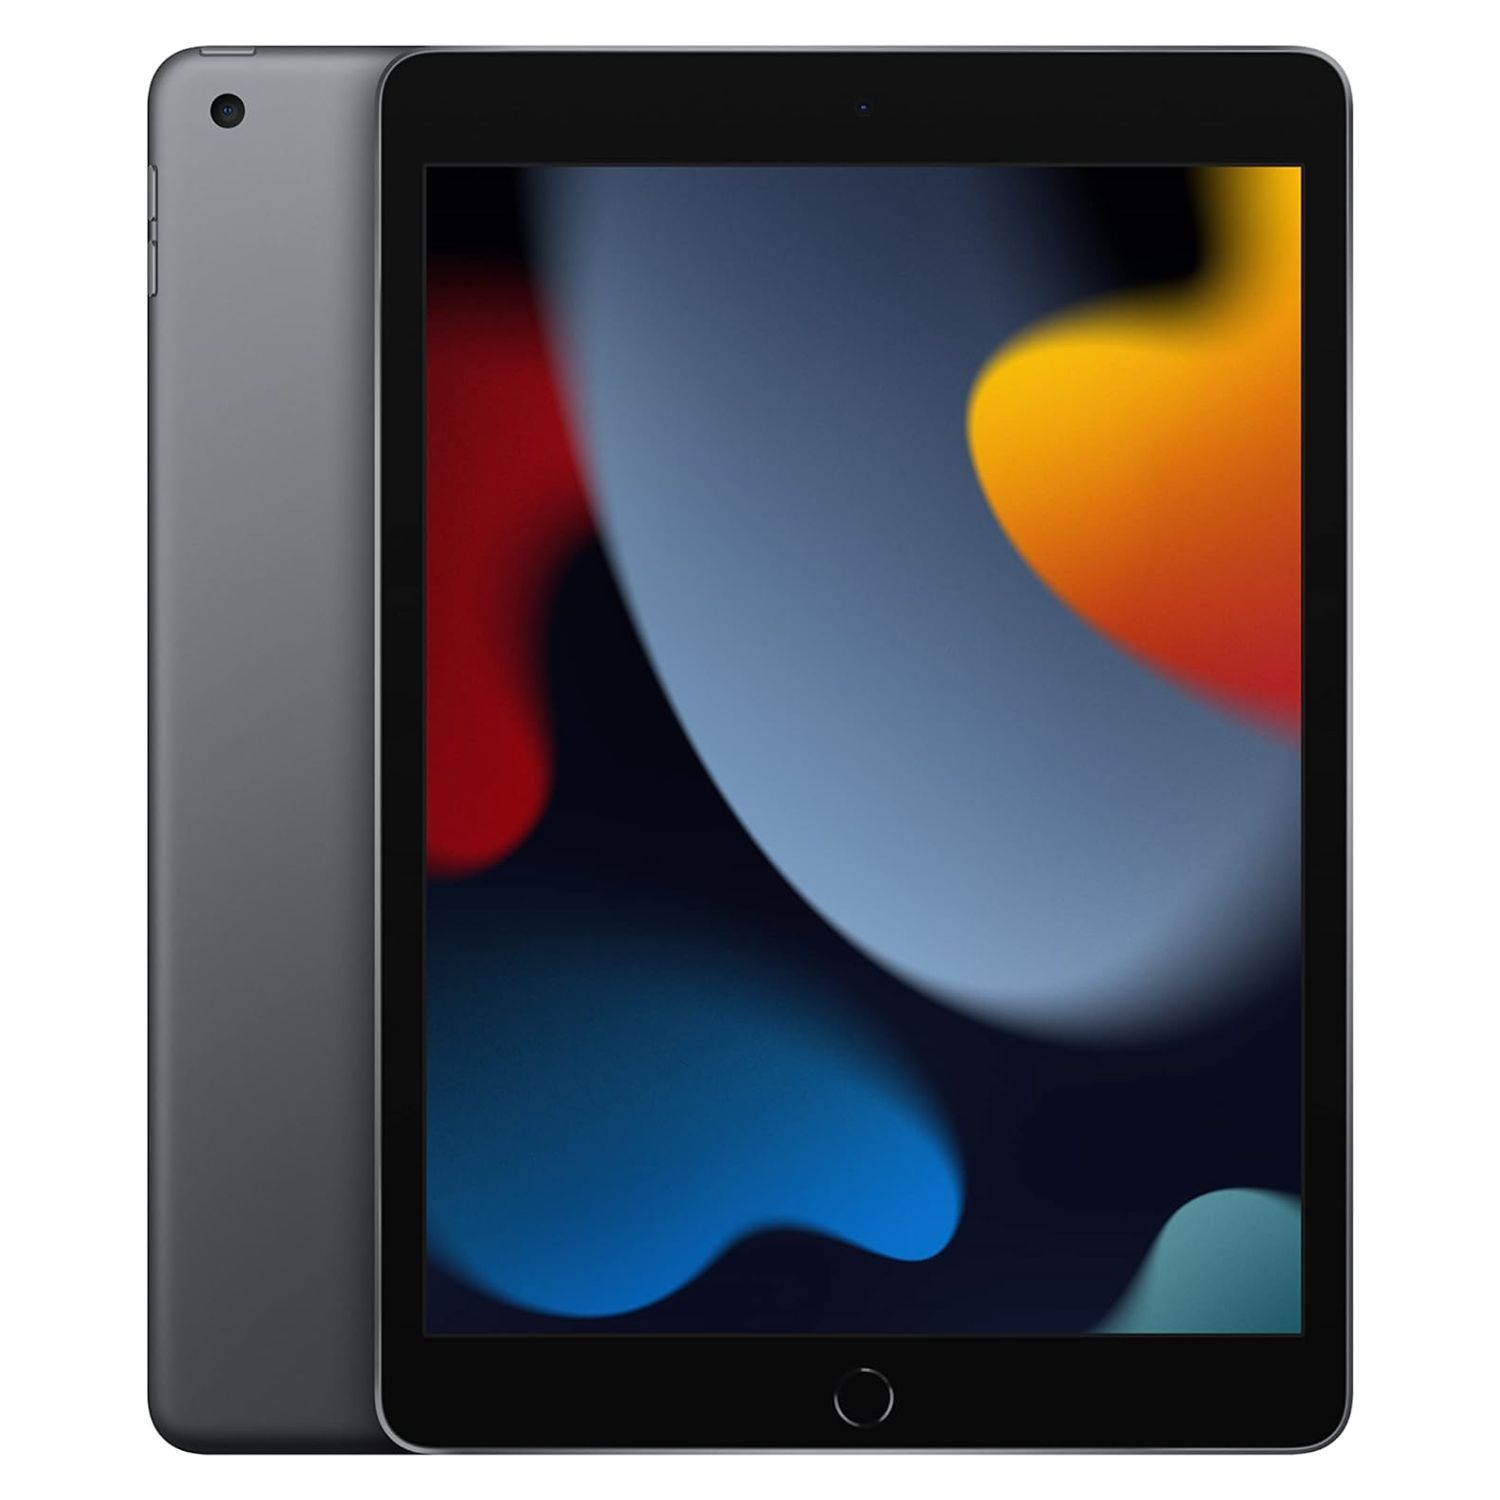  Apple iPad 10.2-inch  (Wi-Fi, 64GB)